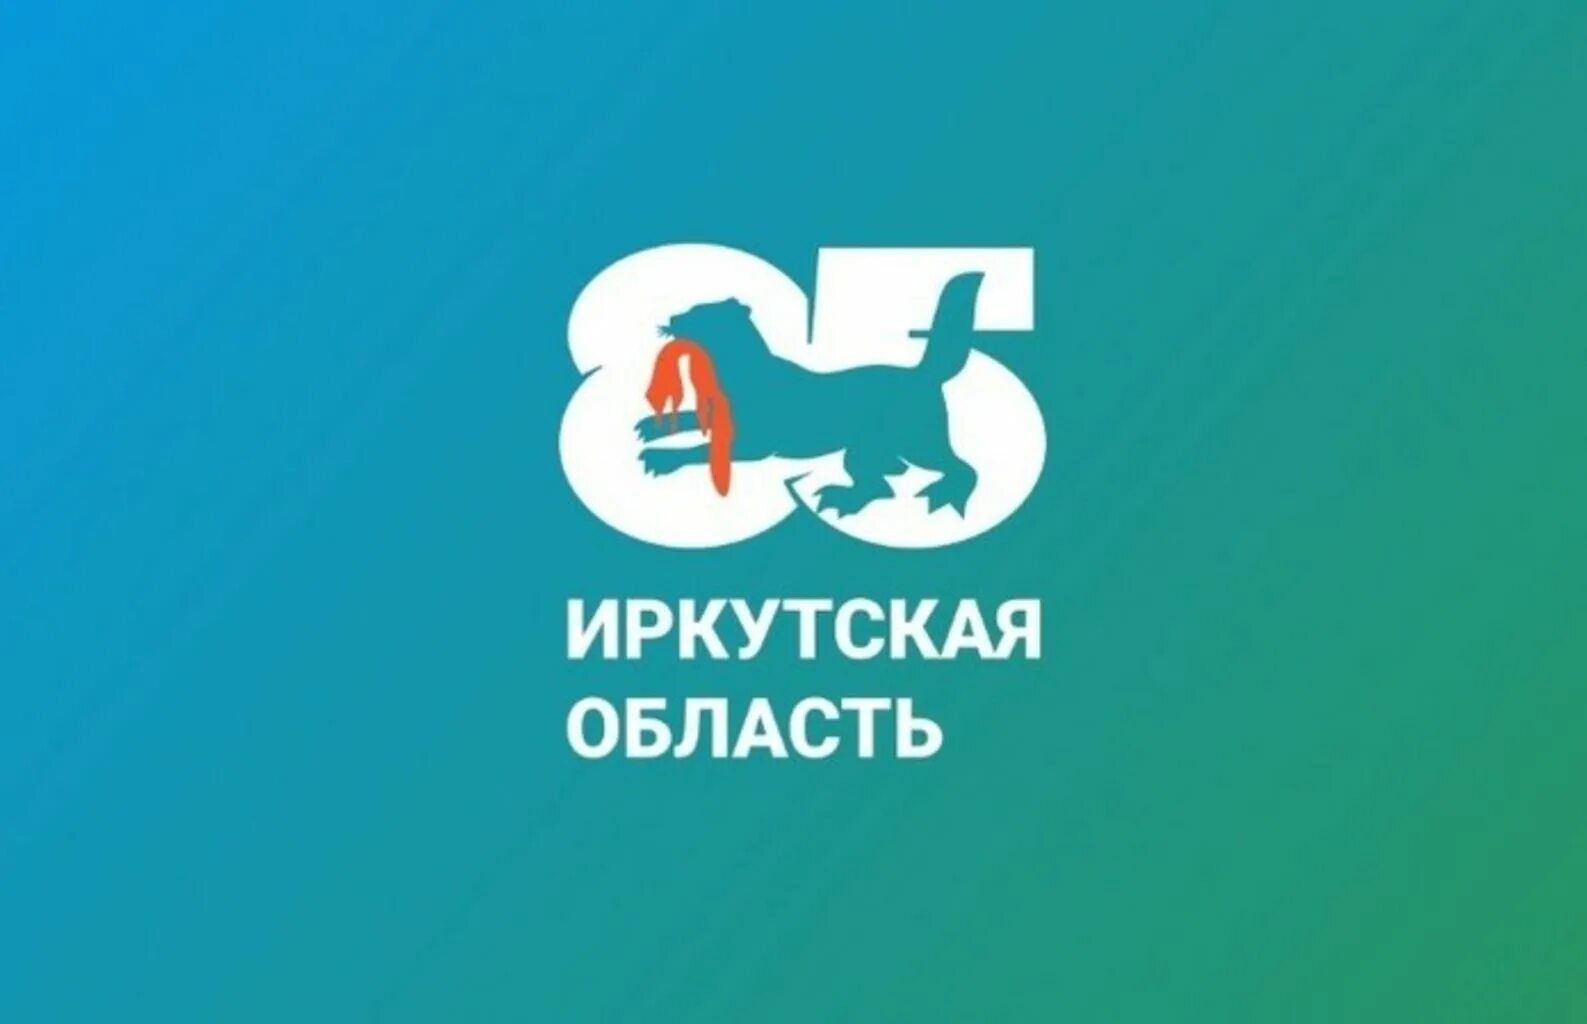 85 Лет Иркутской области. Логотип 85 лет Ирк обл. 85 Лет Иркутской области 2022 год. Логотип Иркутской области.